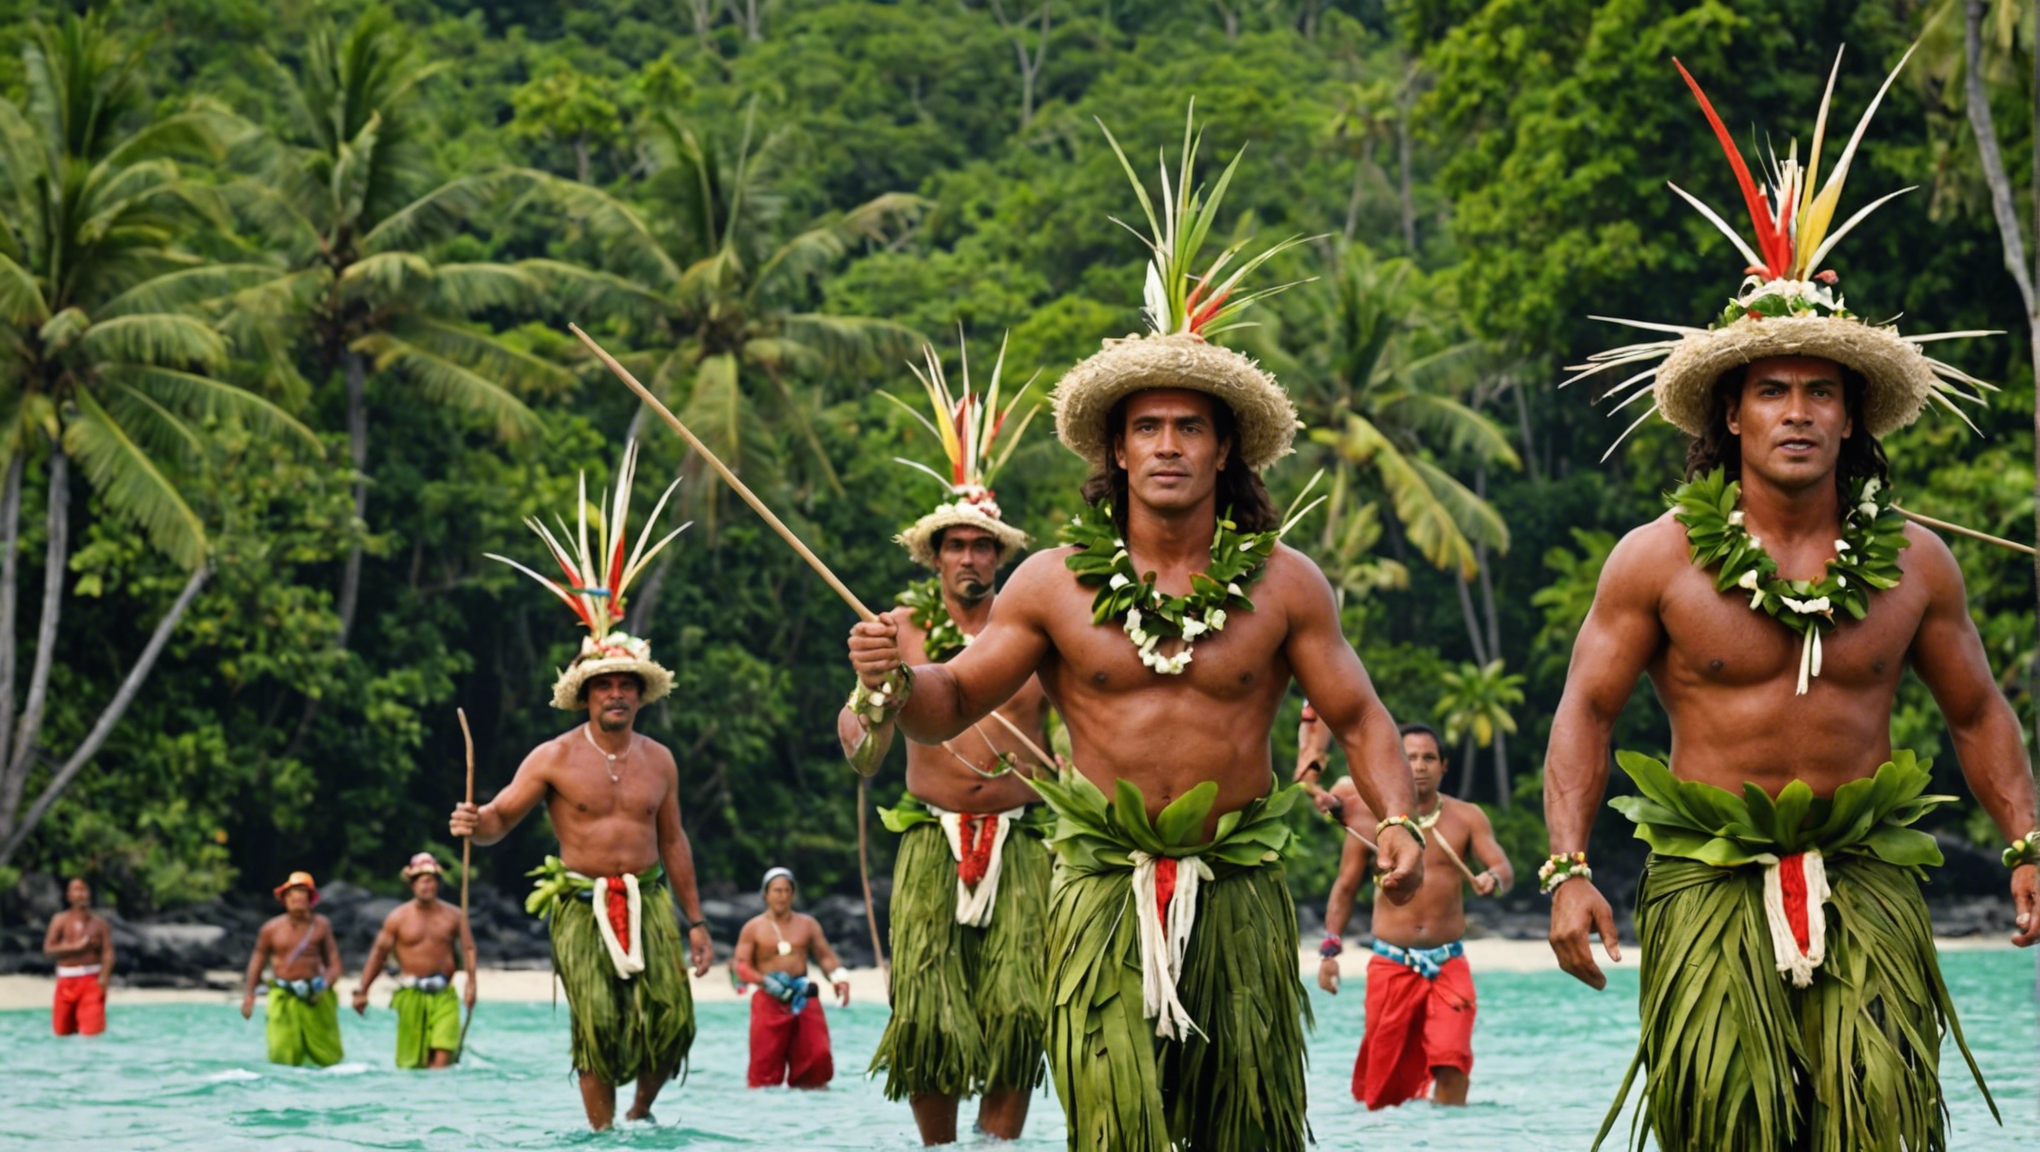 découvrez les festivités traditionnelles qui animent les îles polynésiennes, à tahiti et dans d'autres régions, et plongez-vous dans la richesse culturelle de la polynésie.